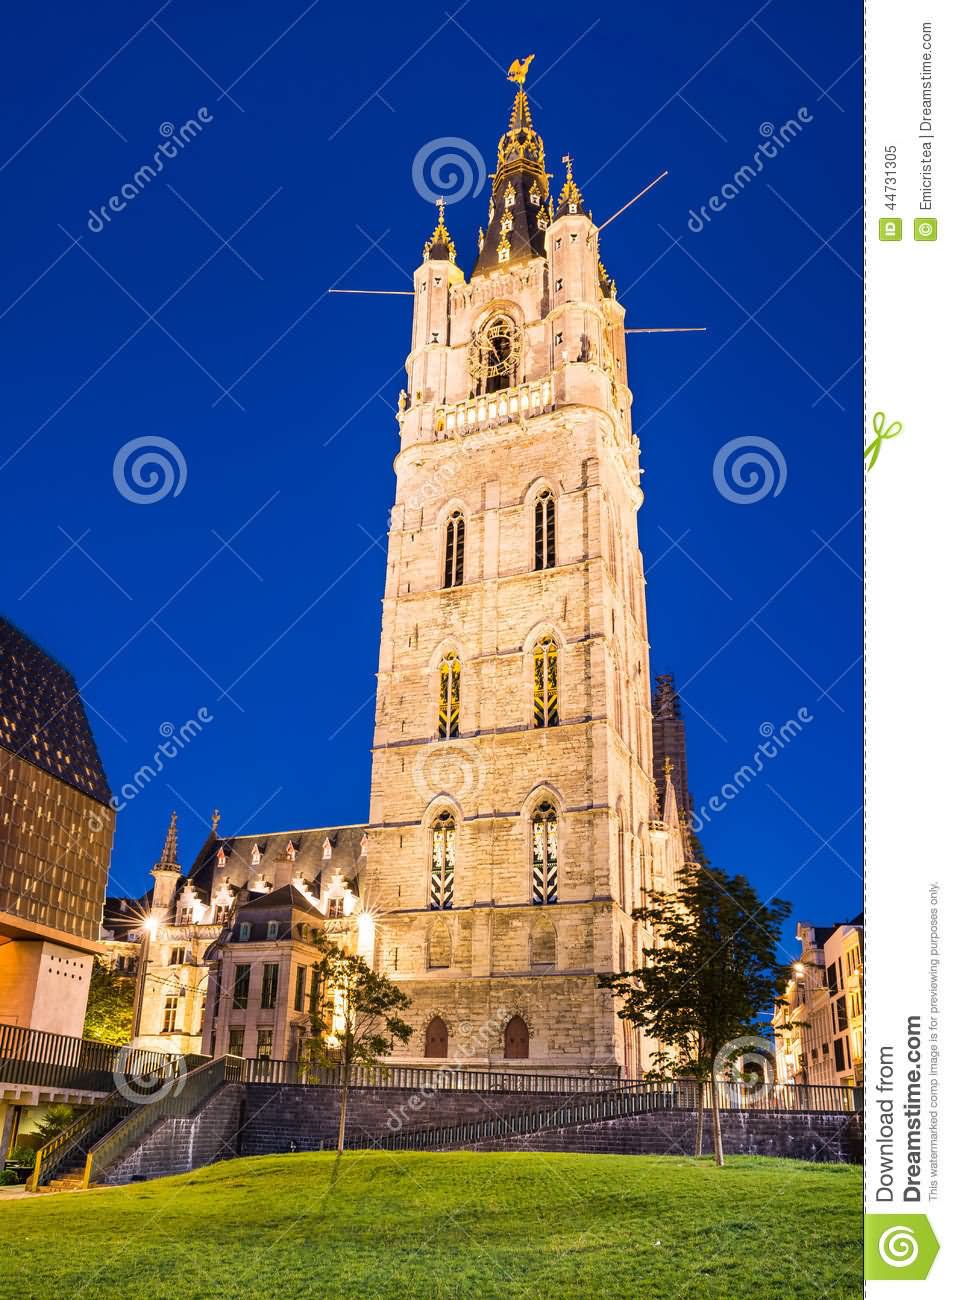 Belfry Of Ghent In Night In Belgium